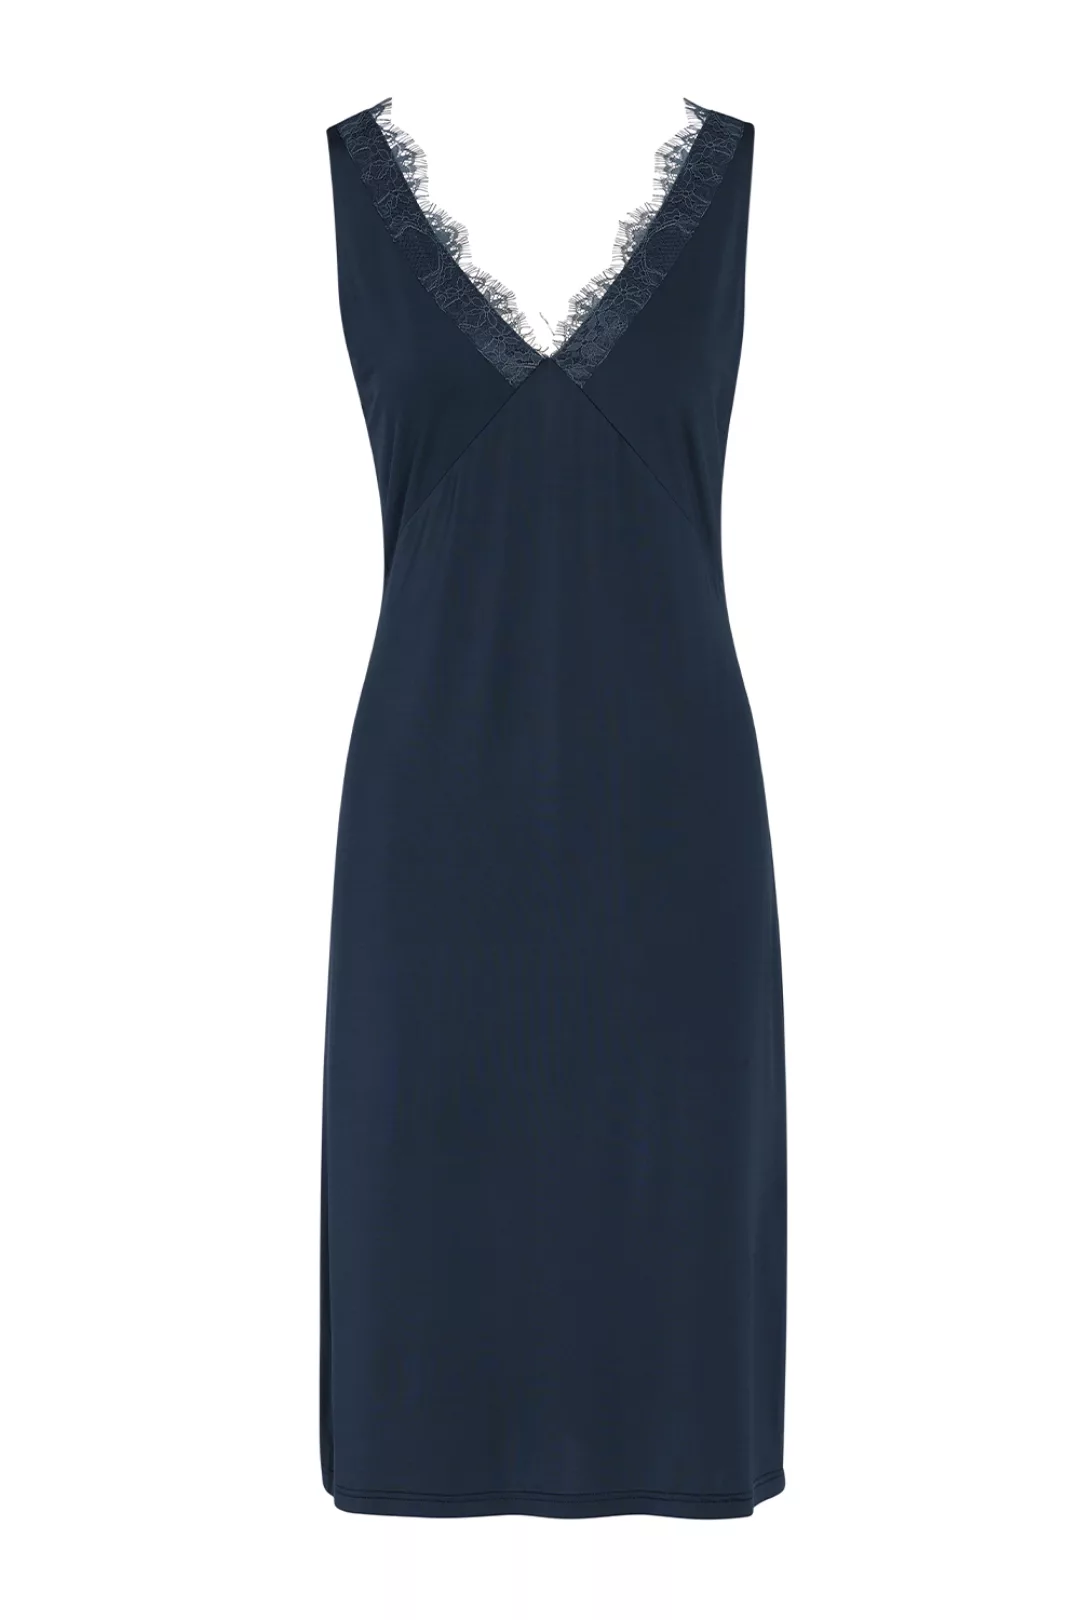 ESSENZA Lexi Uni Nachthemd ärmellos Loungewear 4 44 blau günstig online kaufen